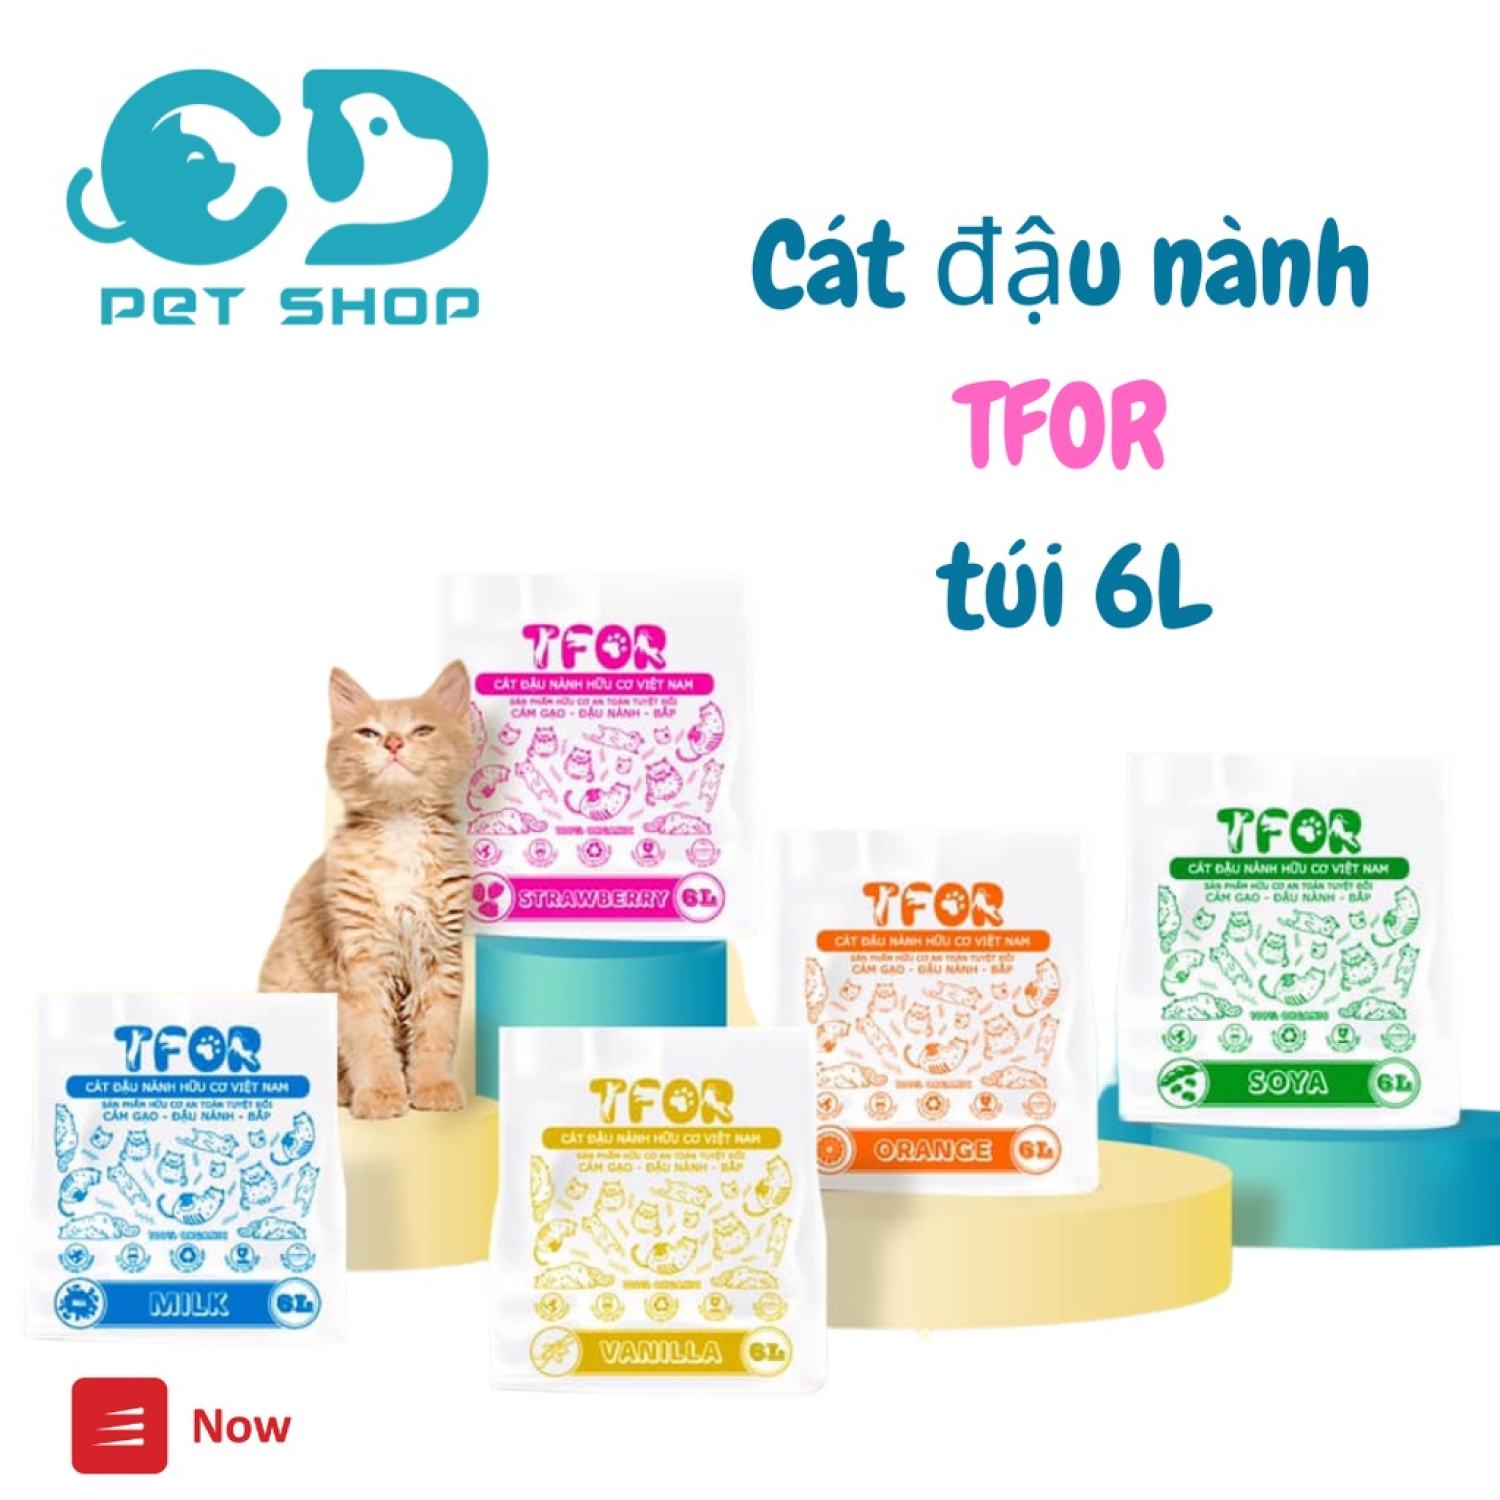 Cát đậu nành TFOR | Túi 6L~ 2.3KG | Cát vệ sinh cho mèo chiết xuất từ đậu nành an toàn cho mèo, xuất xứ Việt Nam